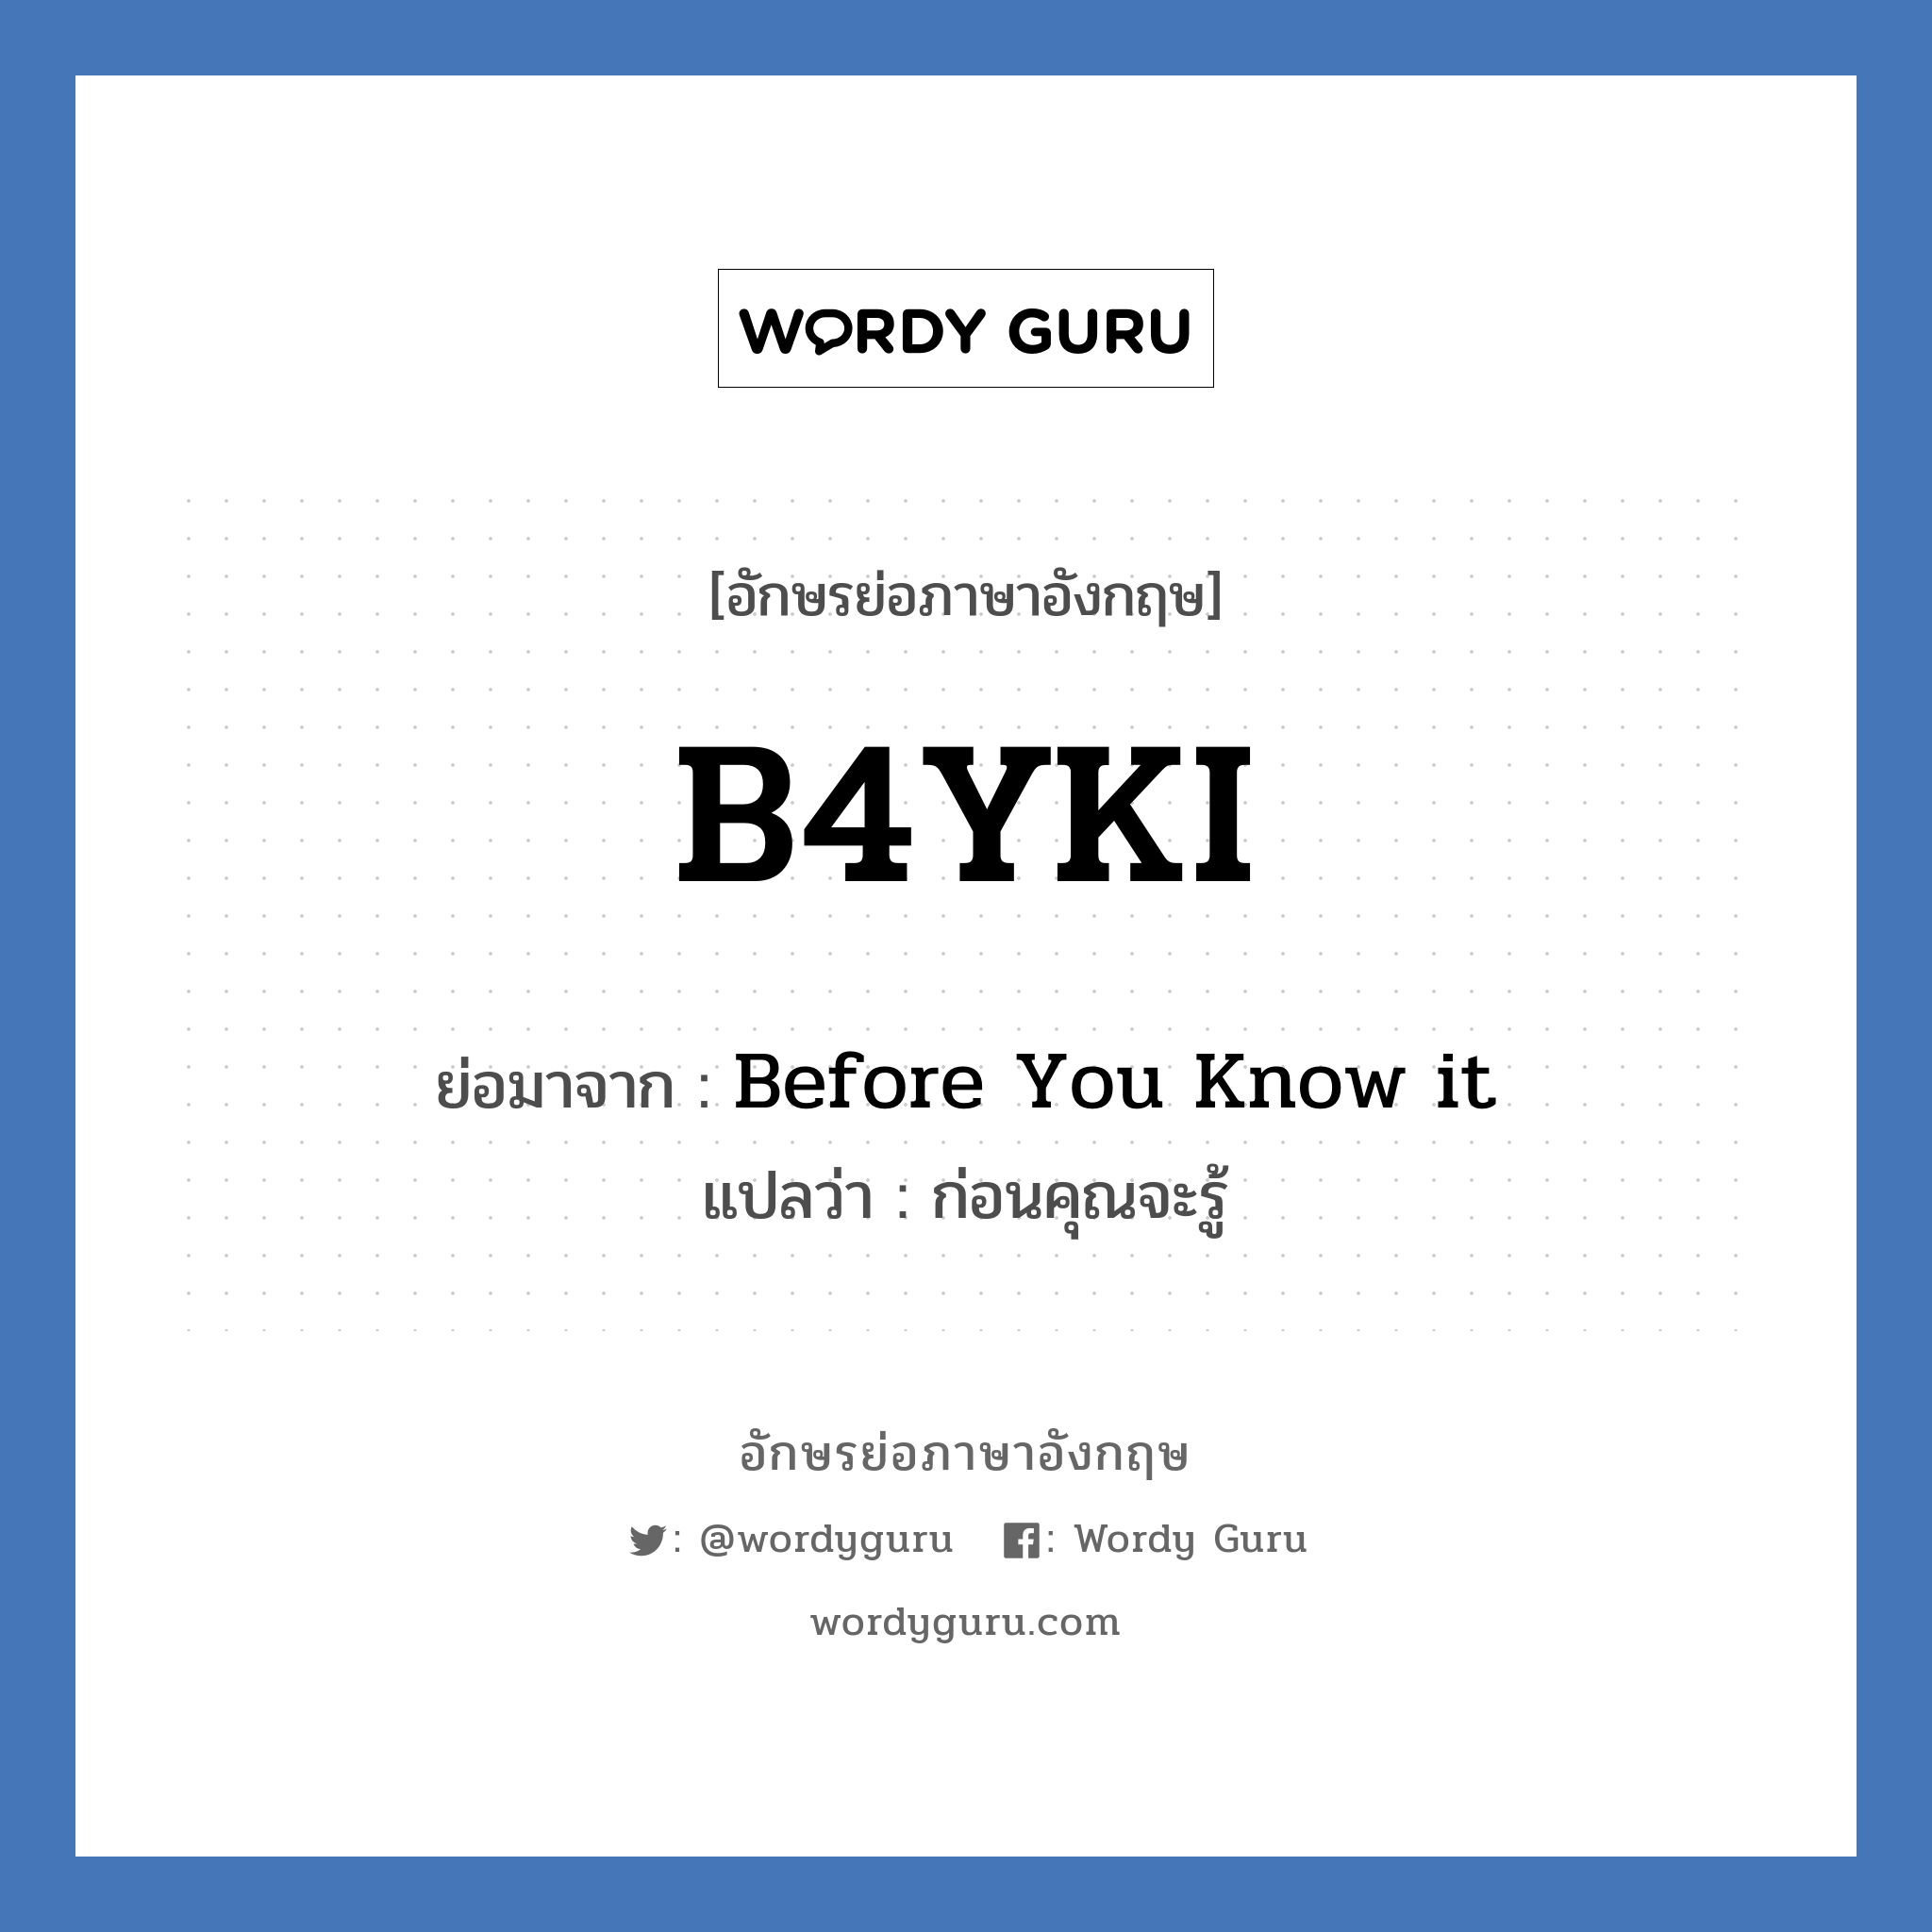 Before You Know it คำย่อคือ? แปลว่า?, อักษรย่อภาษาอังกฤษ Before You Know it ย่อมาจาก B4YKI แปลว่า ก่อนคุณจะรู้